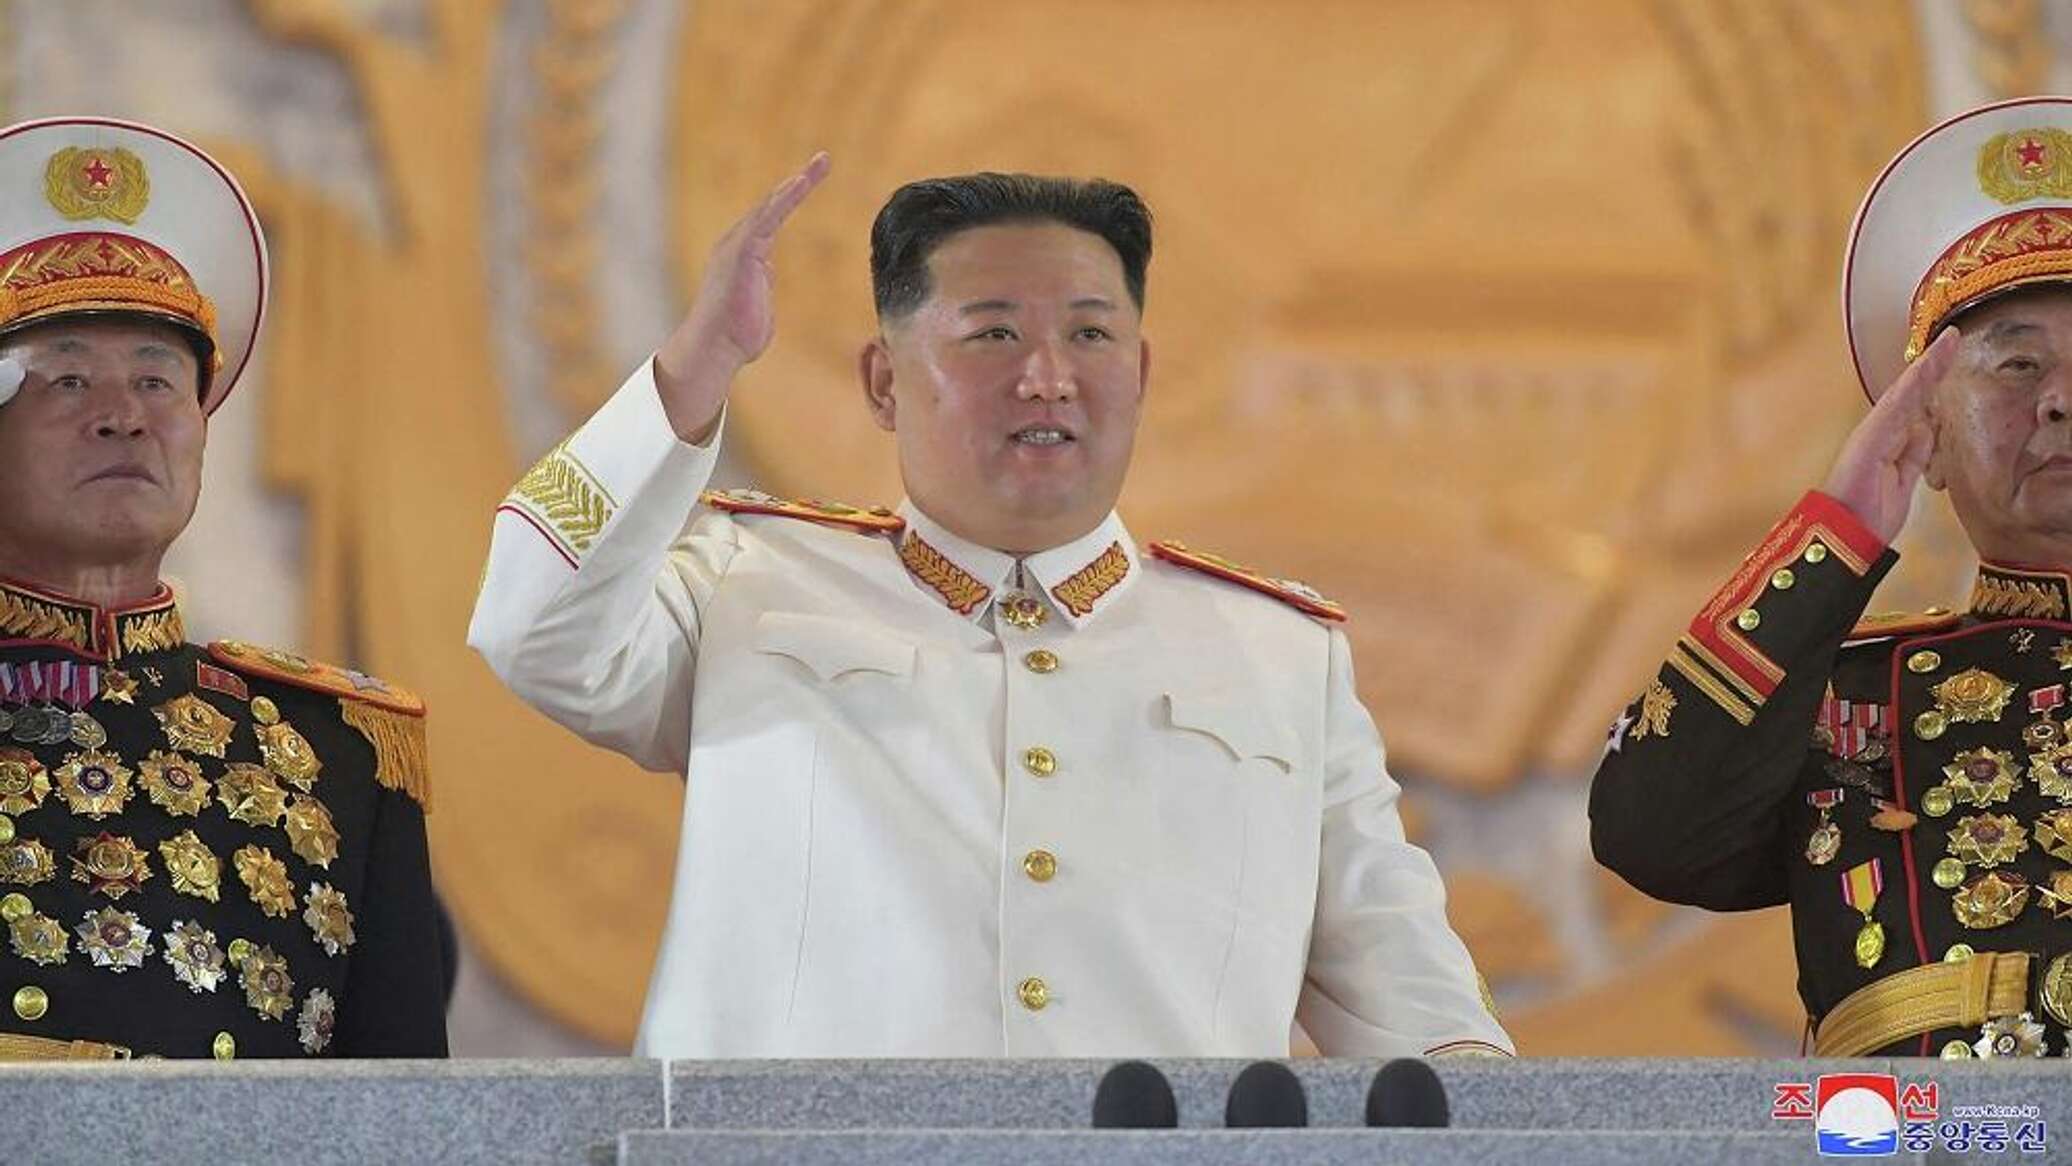 زعيم كوريا الشمالية: حان الوقت للاستعداد للحرب أكثر من أي وقت مضى